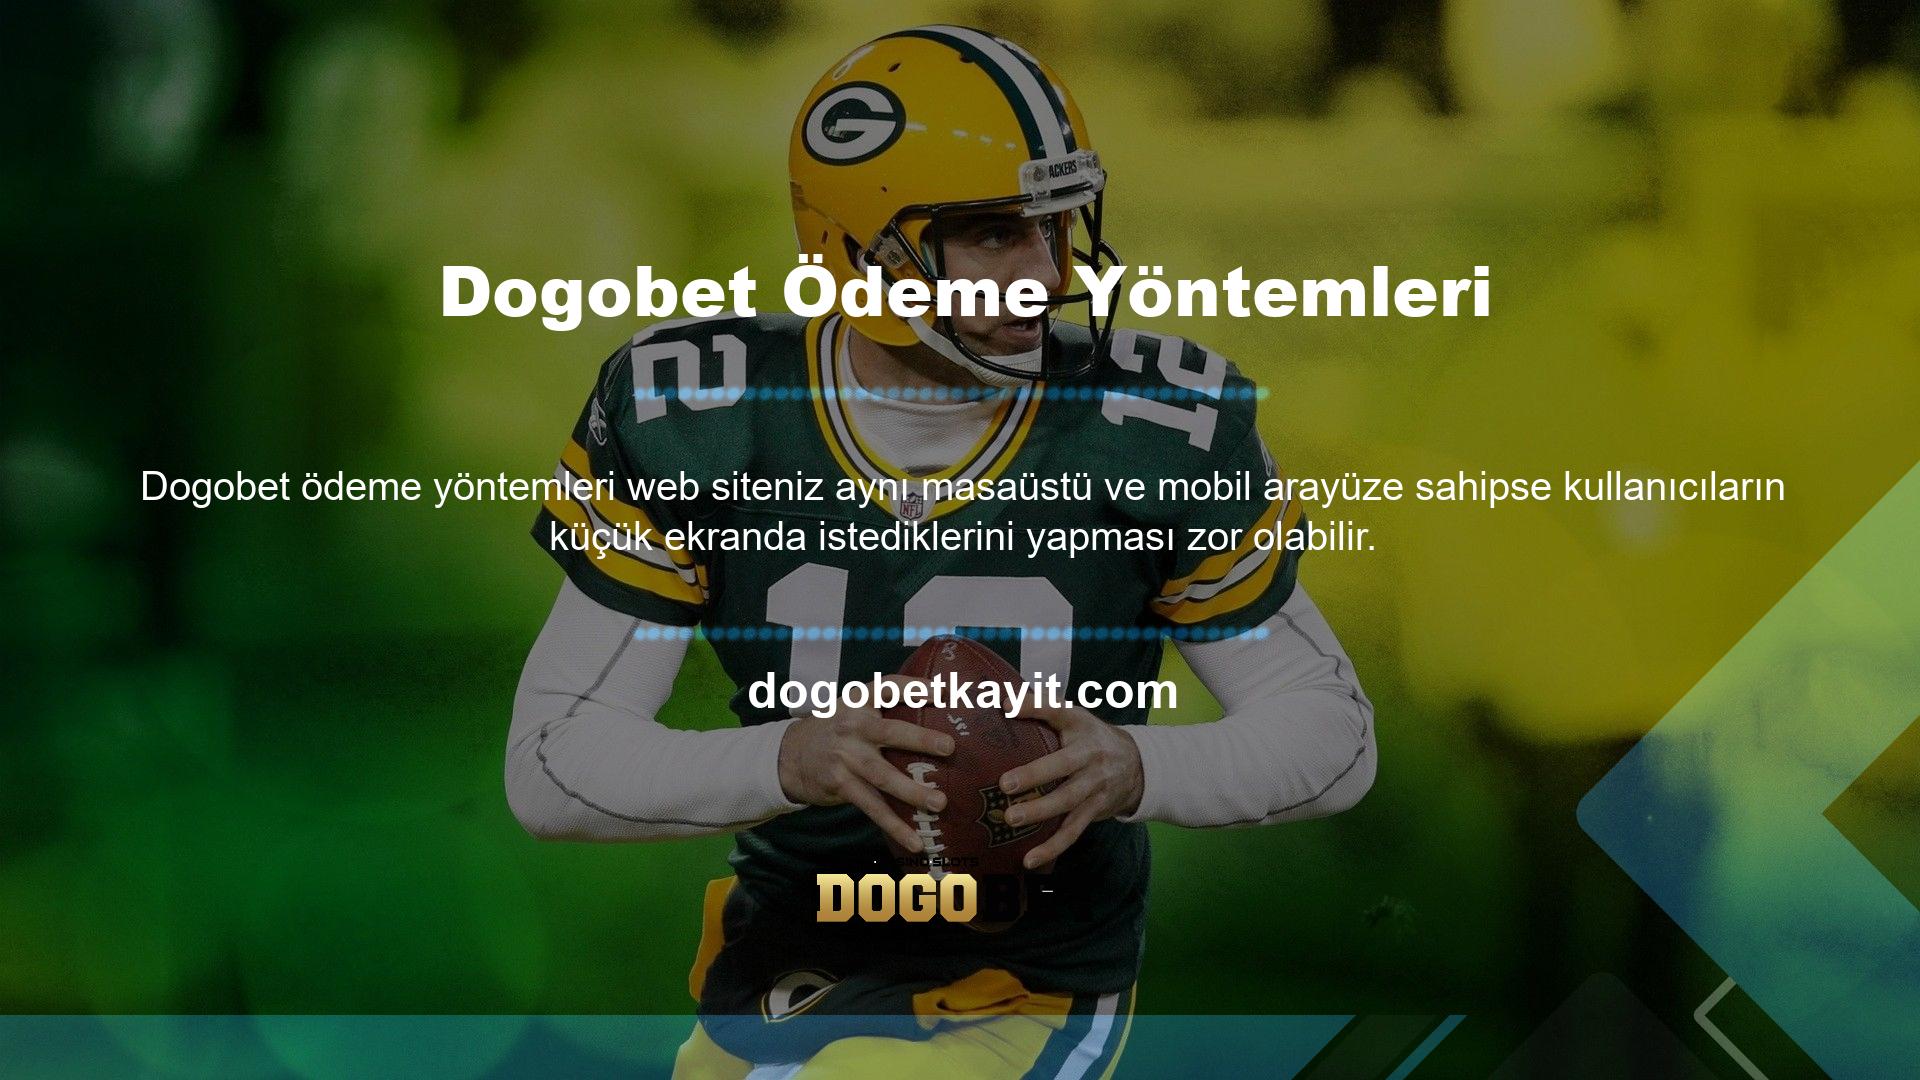 Bunun için Dogobet mobil kullanıcılara özel bir arayüz geliştirmiştir